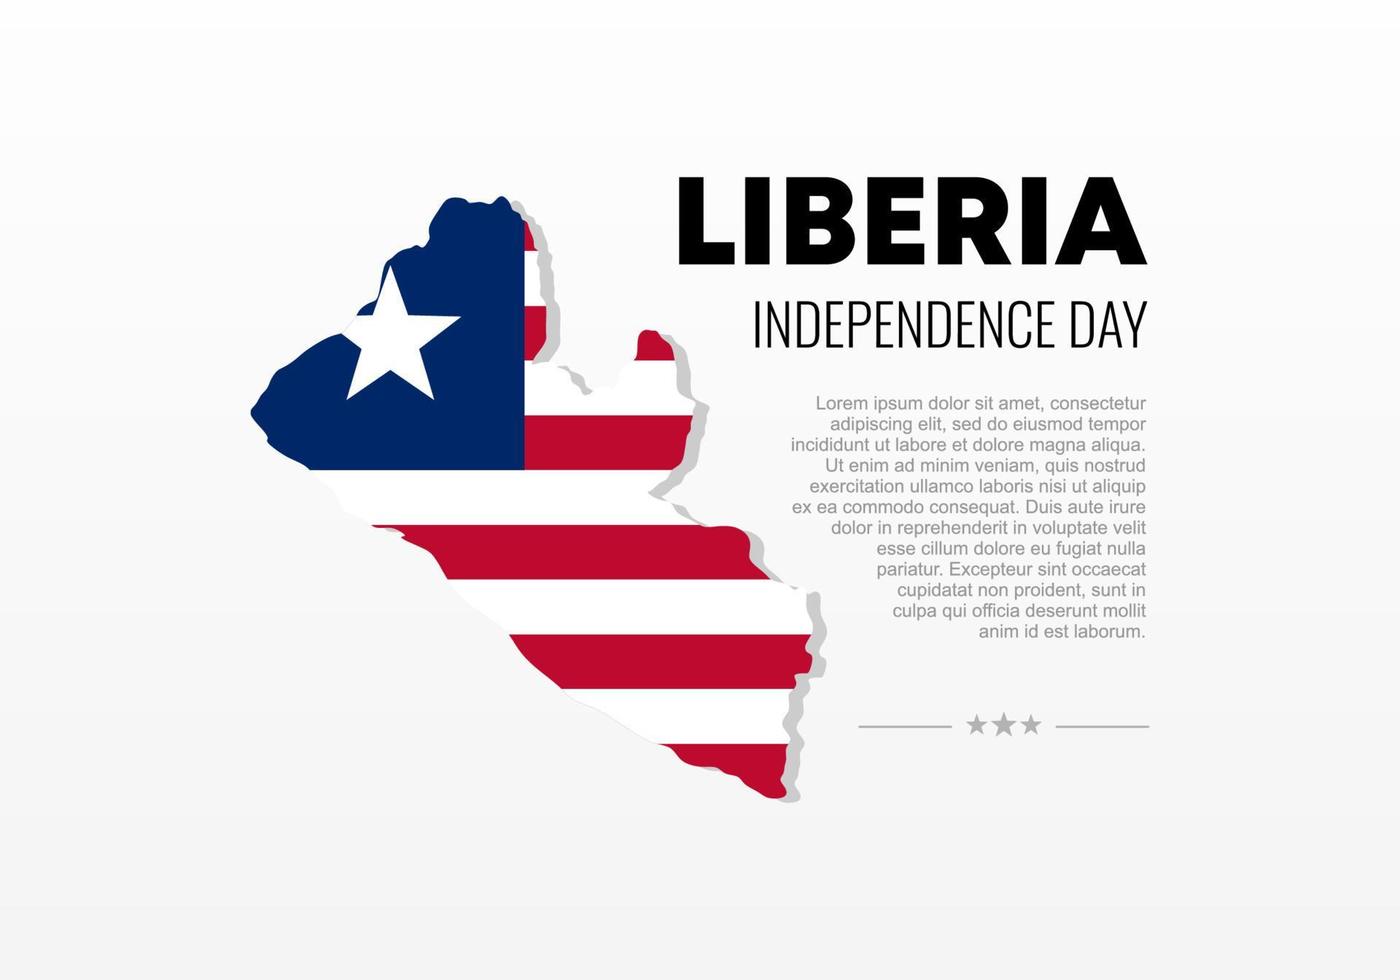 fête de l'indépendance du libéria pour la célébration nationale le 26 juillet. vecteur